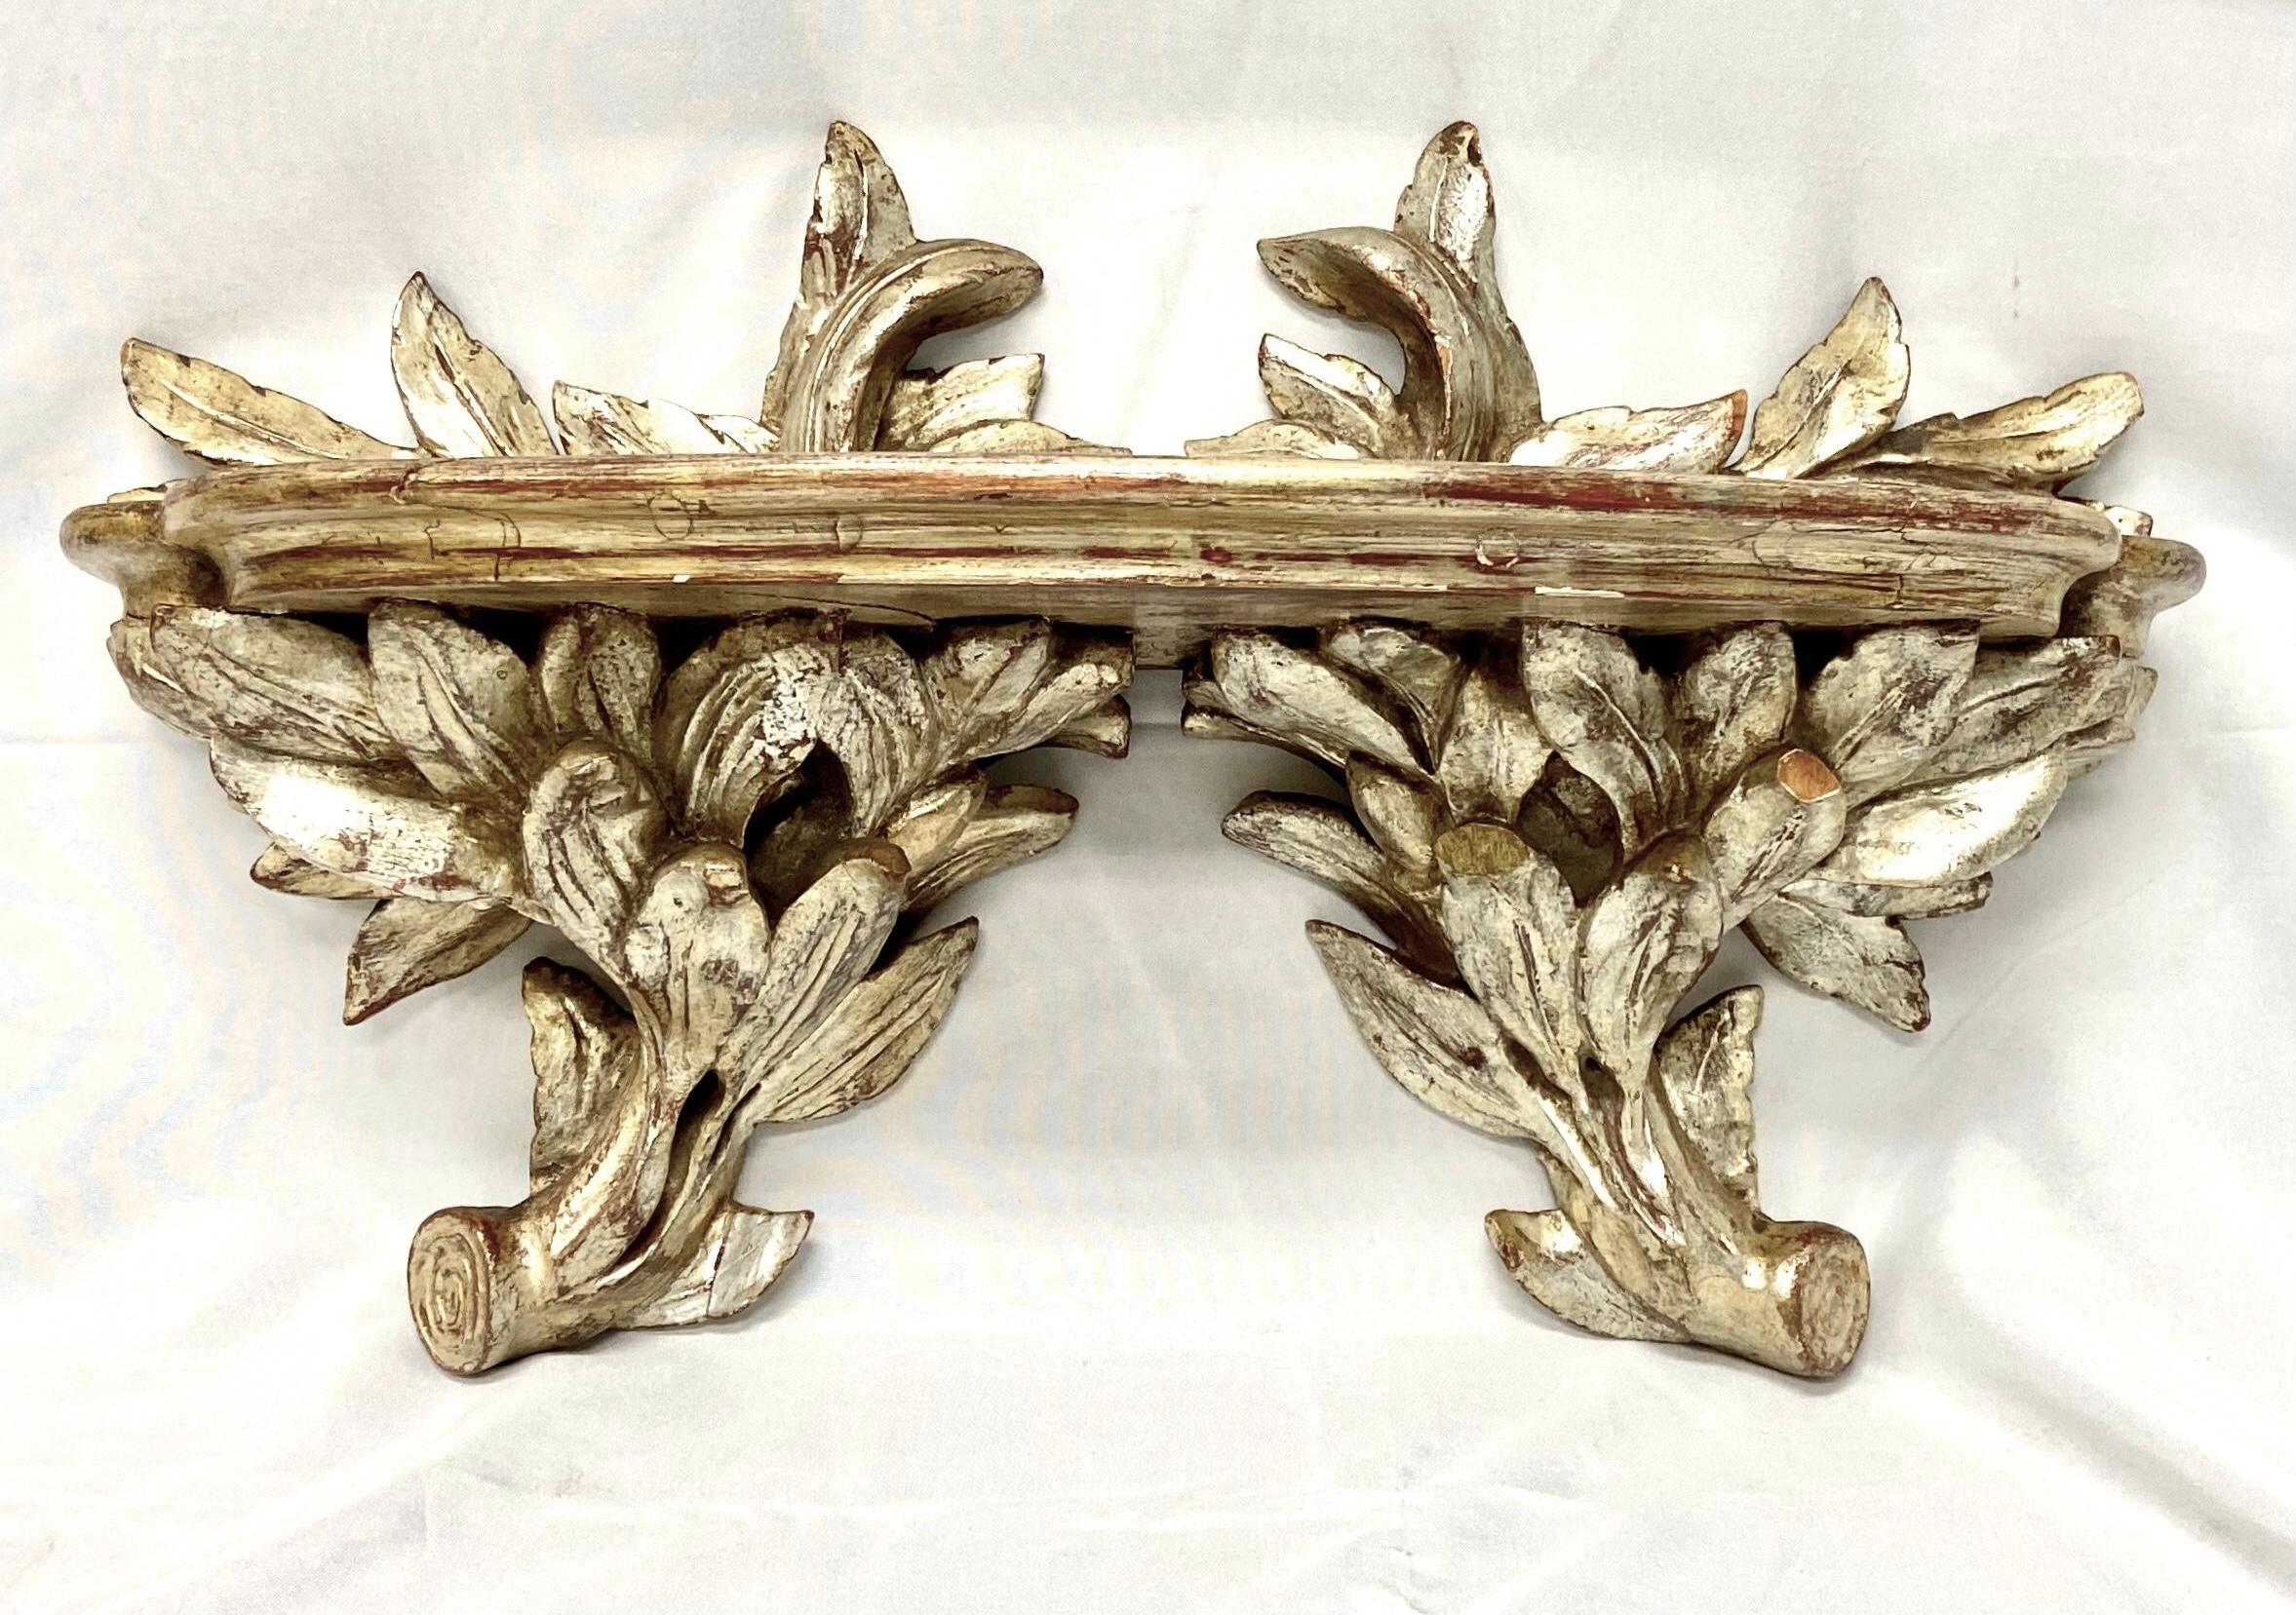 Schönes antikes Silber vergoldetes handgeschnitztes Holz Wandregal. Ideal für die Präsentation von Kunstwerken oder Dekoration.